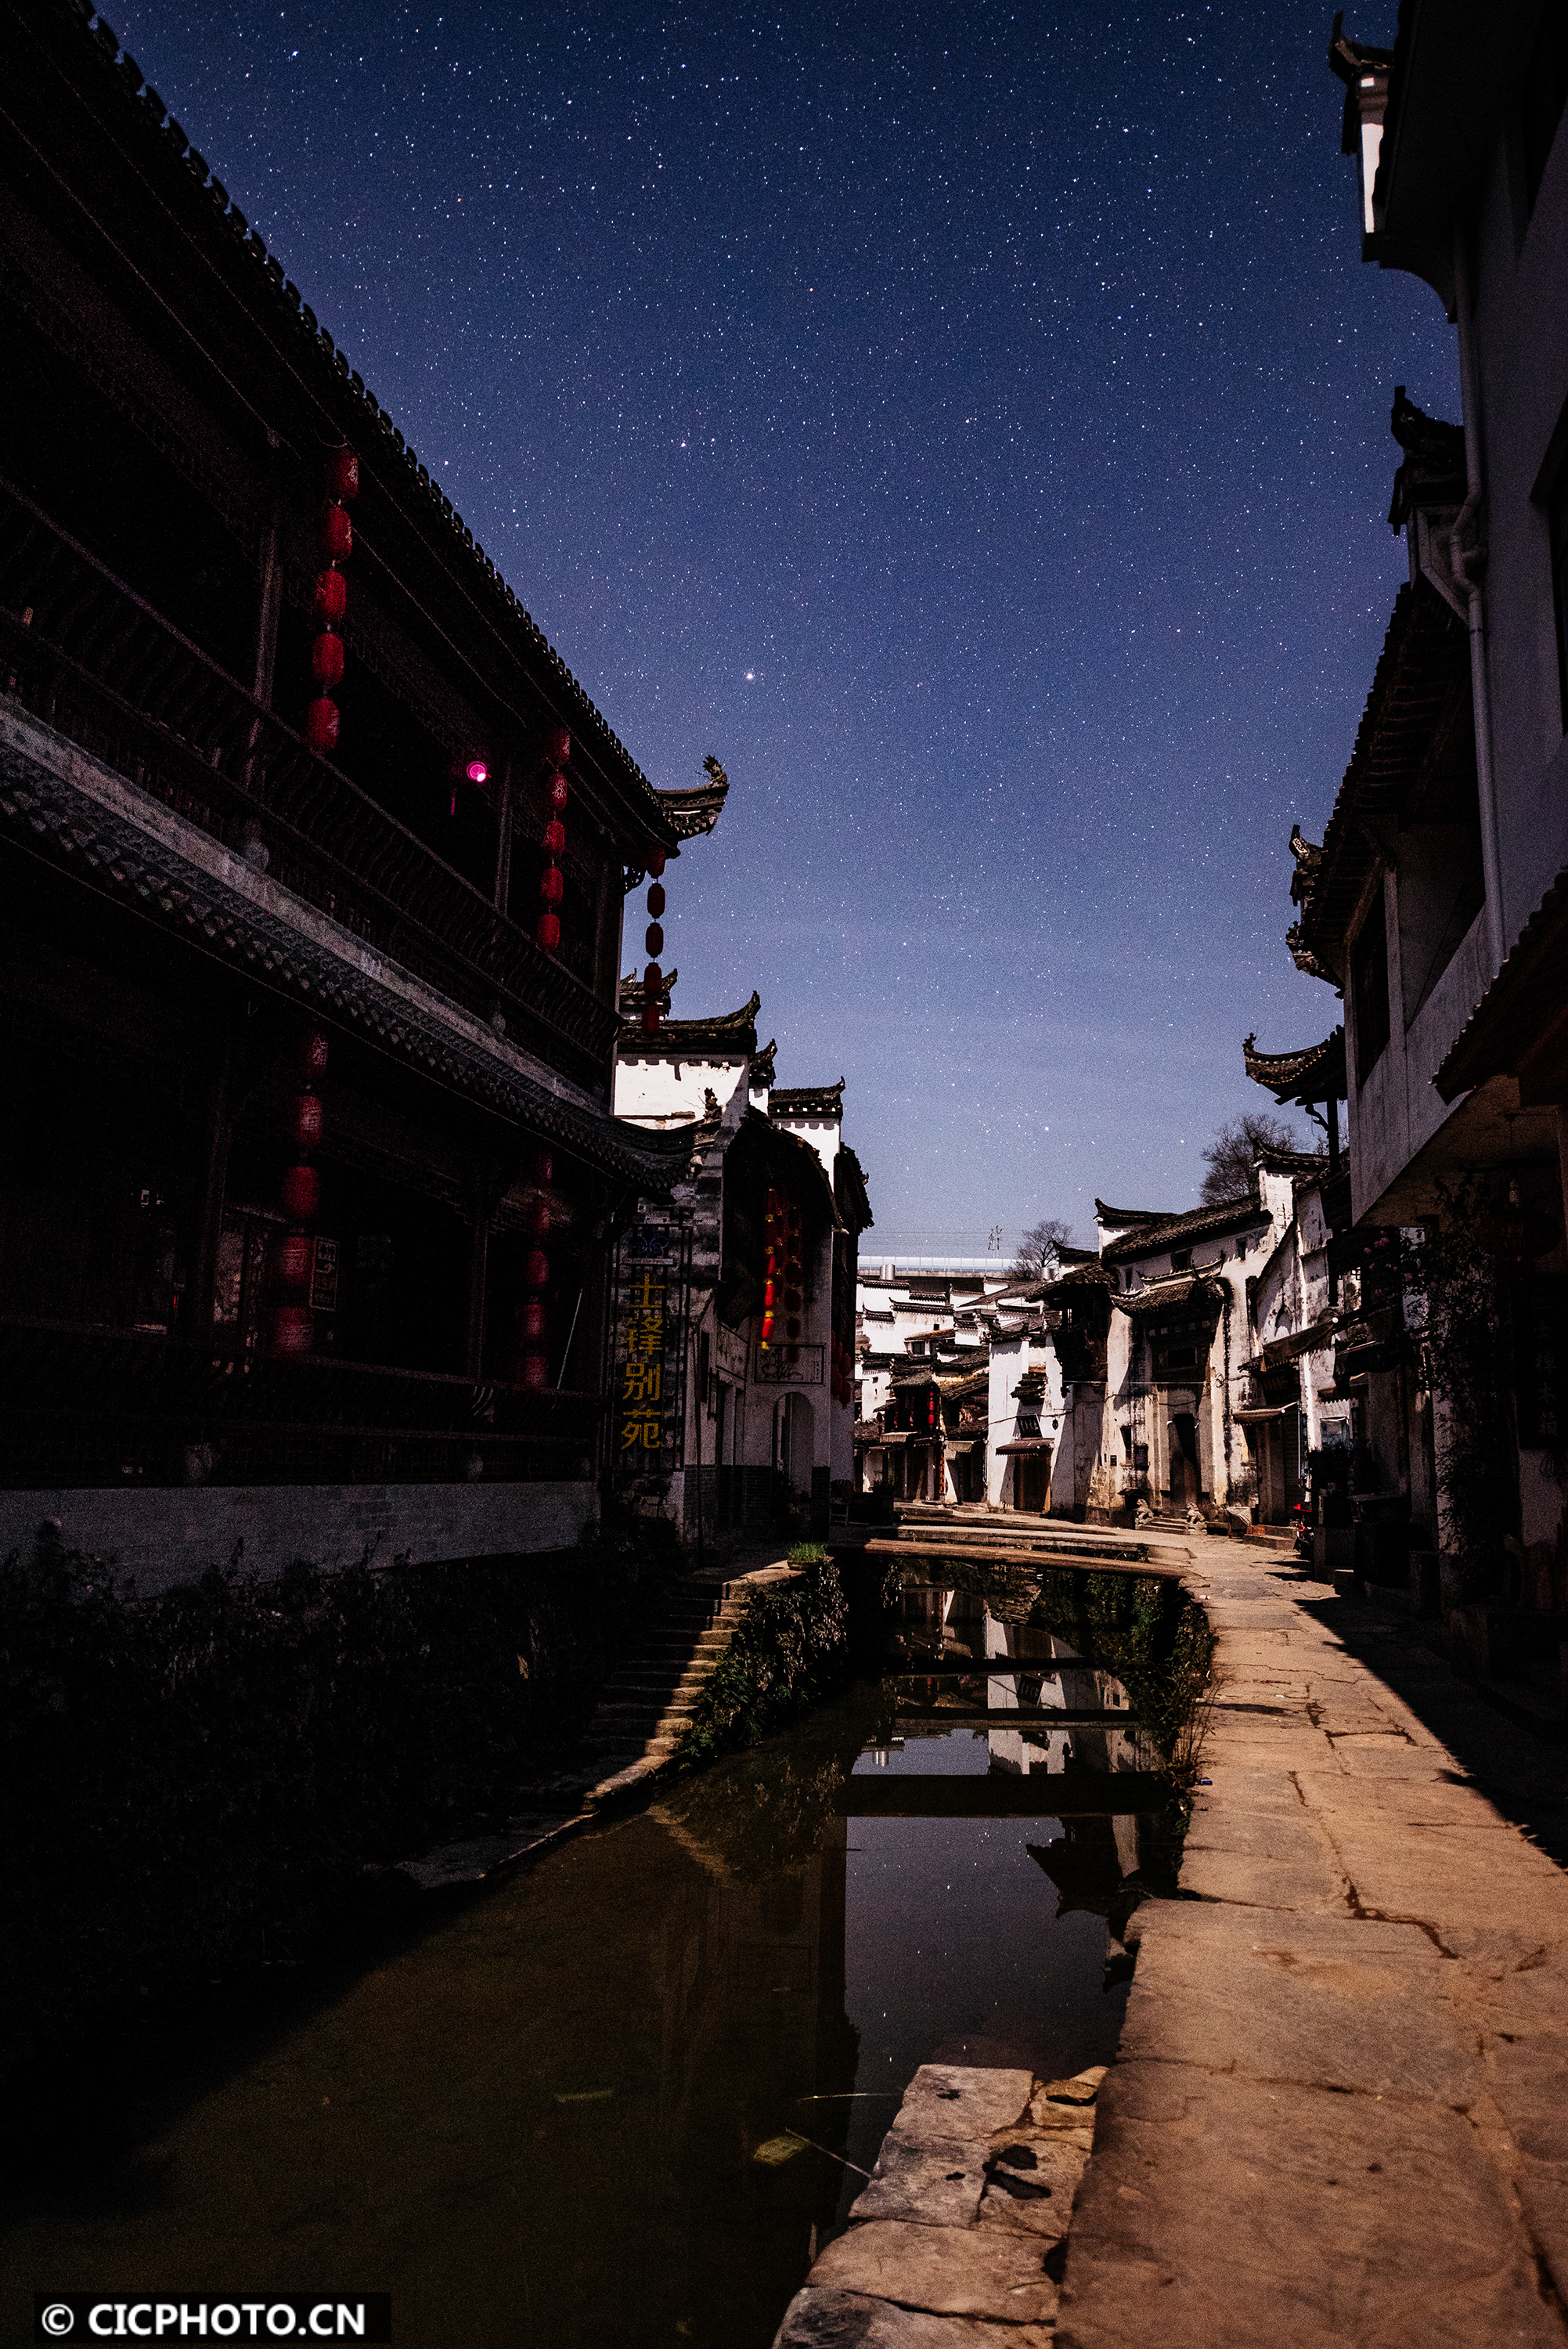 1月1日,新年伊始,点点繁星装点着江西省婺源李坑古镇的夜晚.